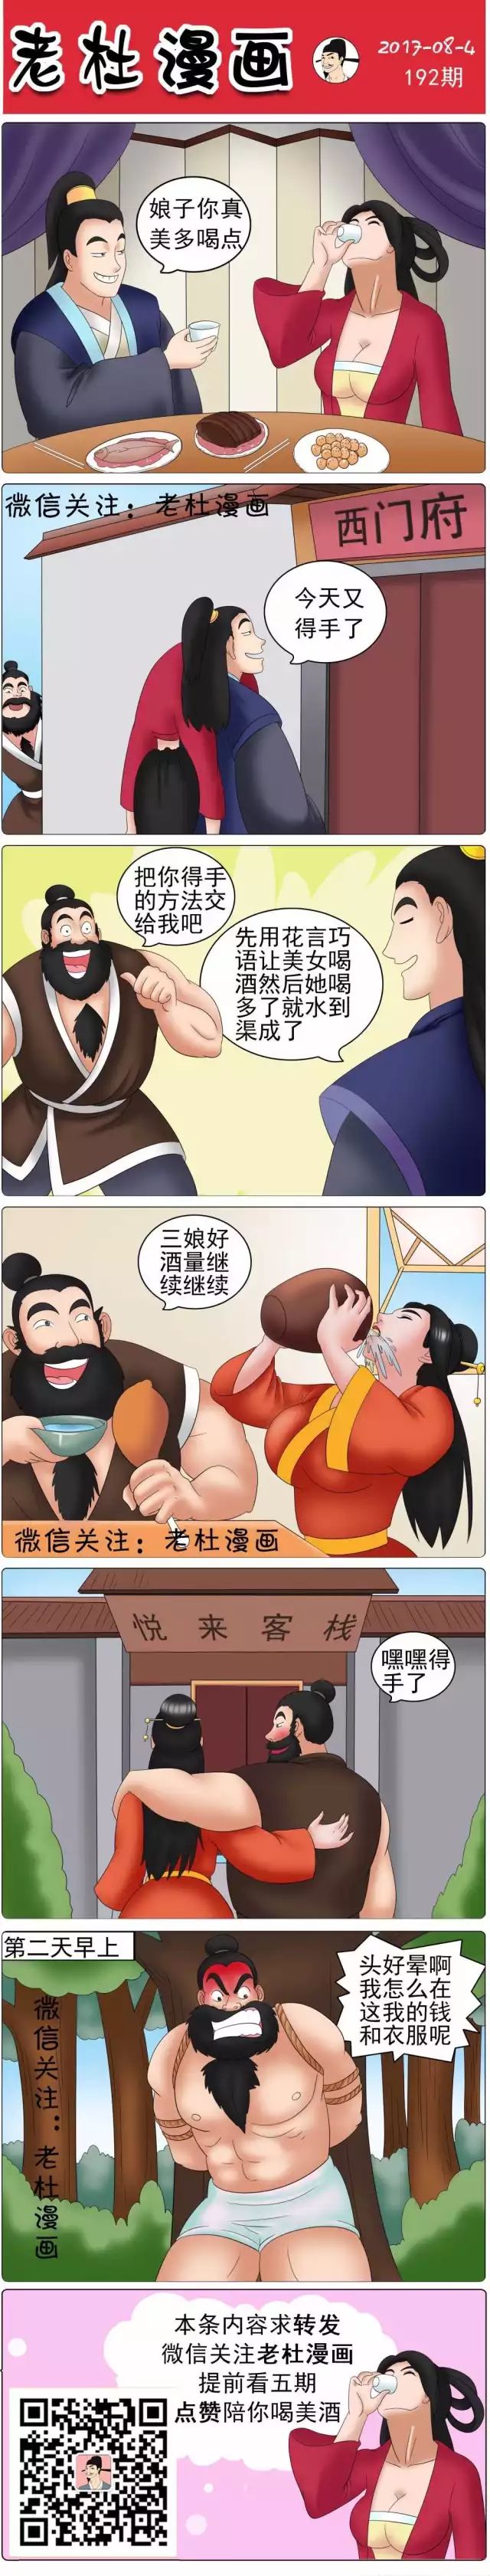 老杜漫画第192期 西门庆撩妹的独家绝活 炮渣漫画网